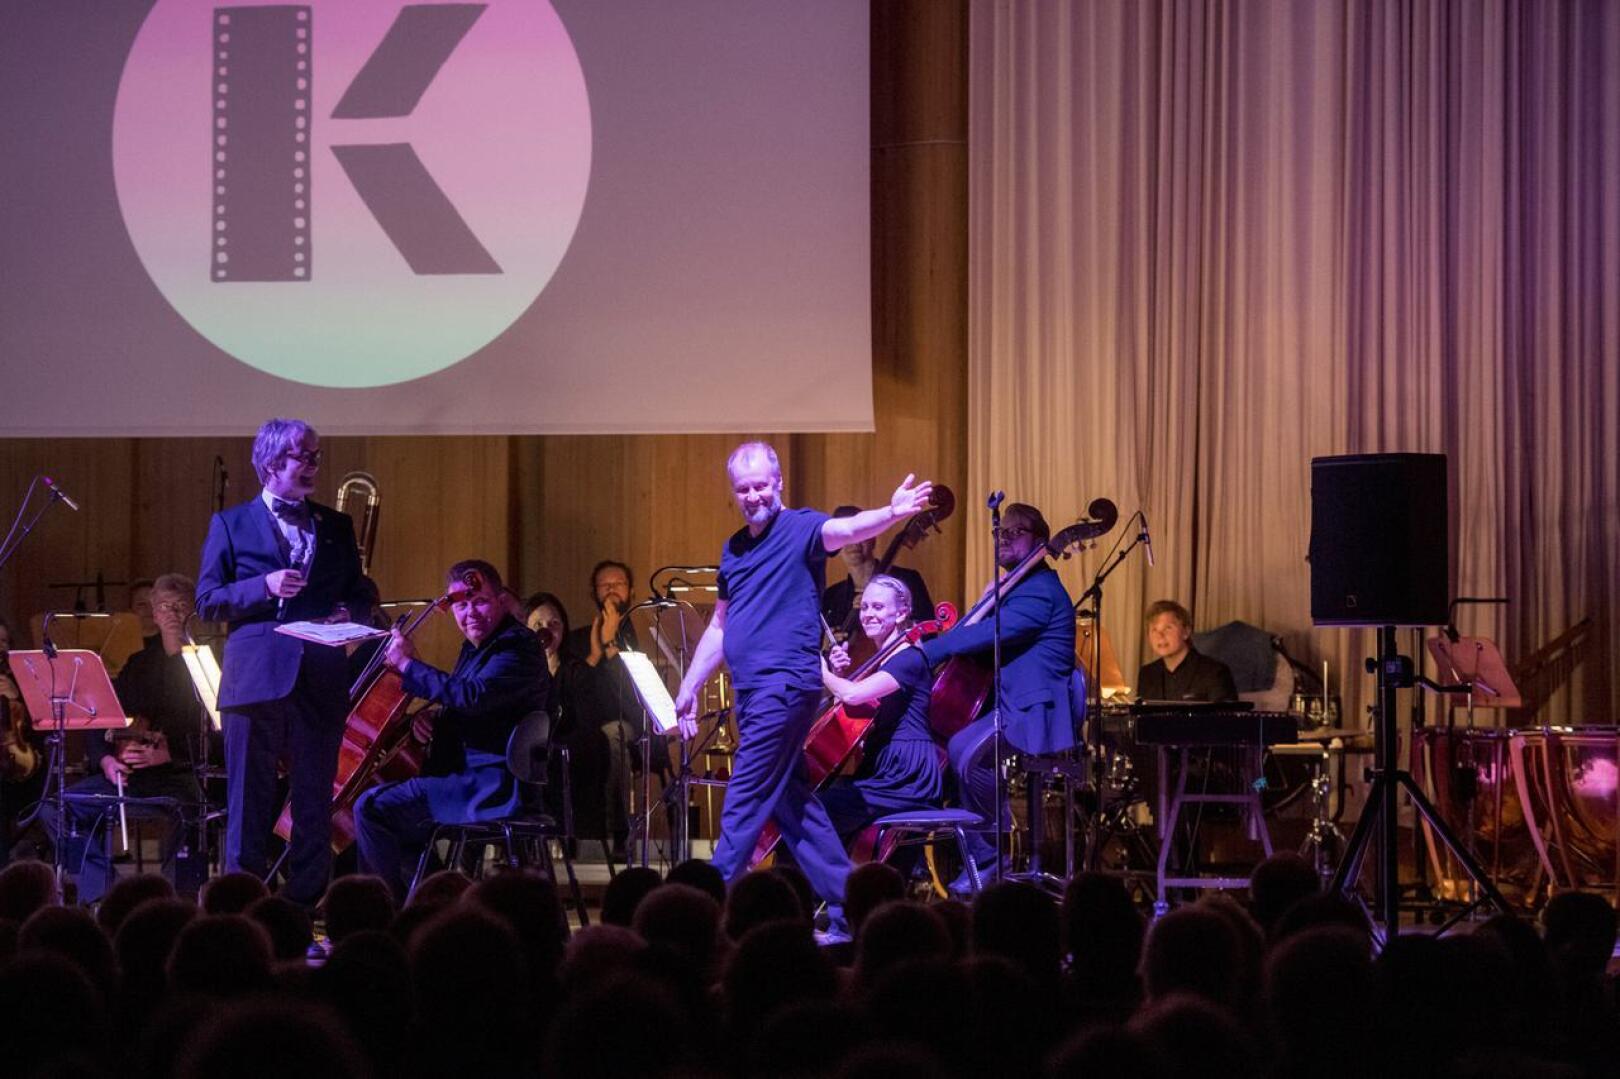 Yhteistyökumppanina on ollut myös Keski-Pohjanmaan Kamariorkesteri. Tässä "solistina" Heikki Kossi.